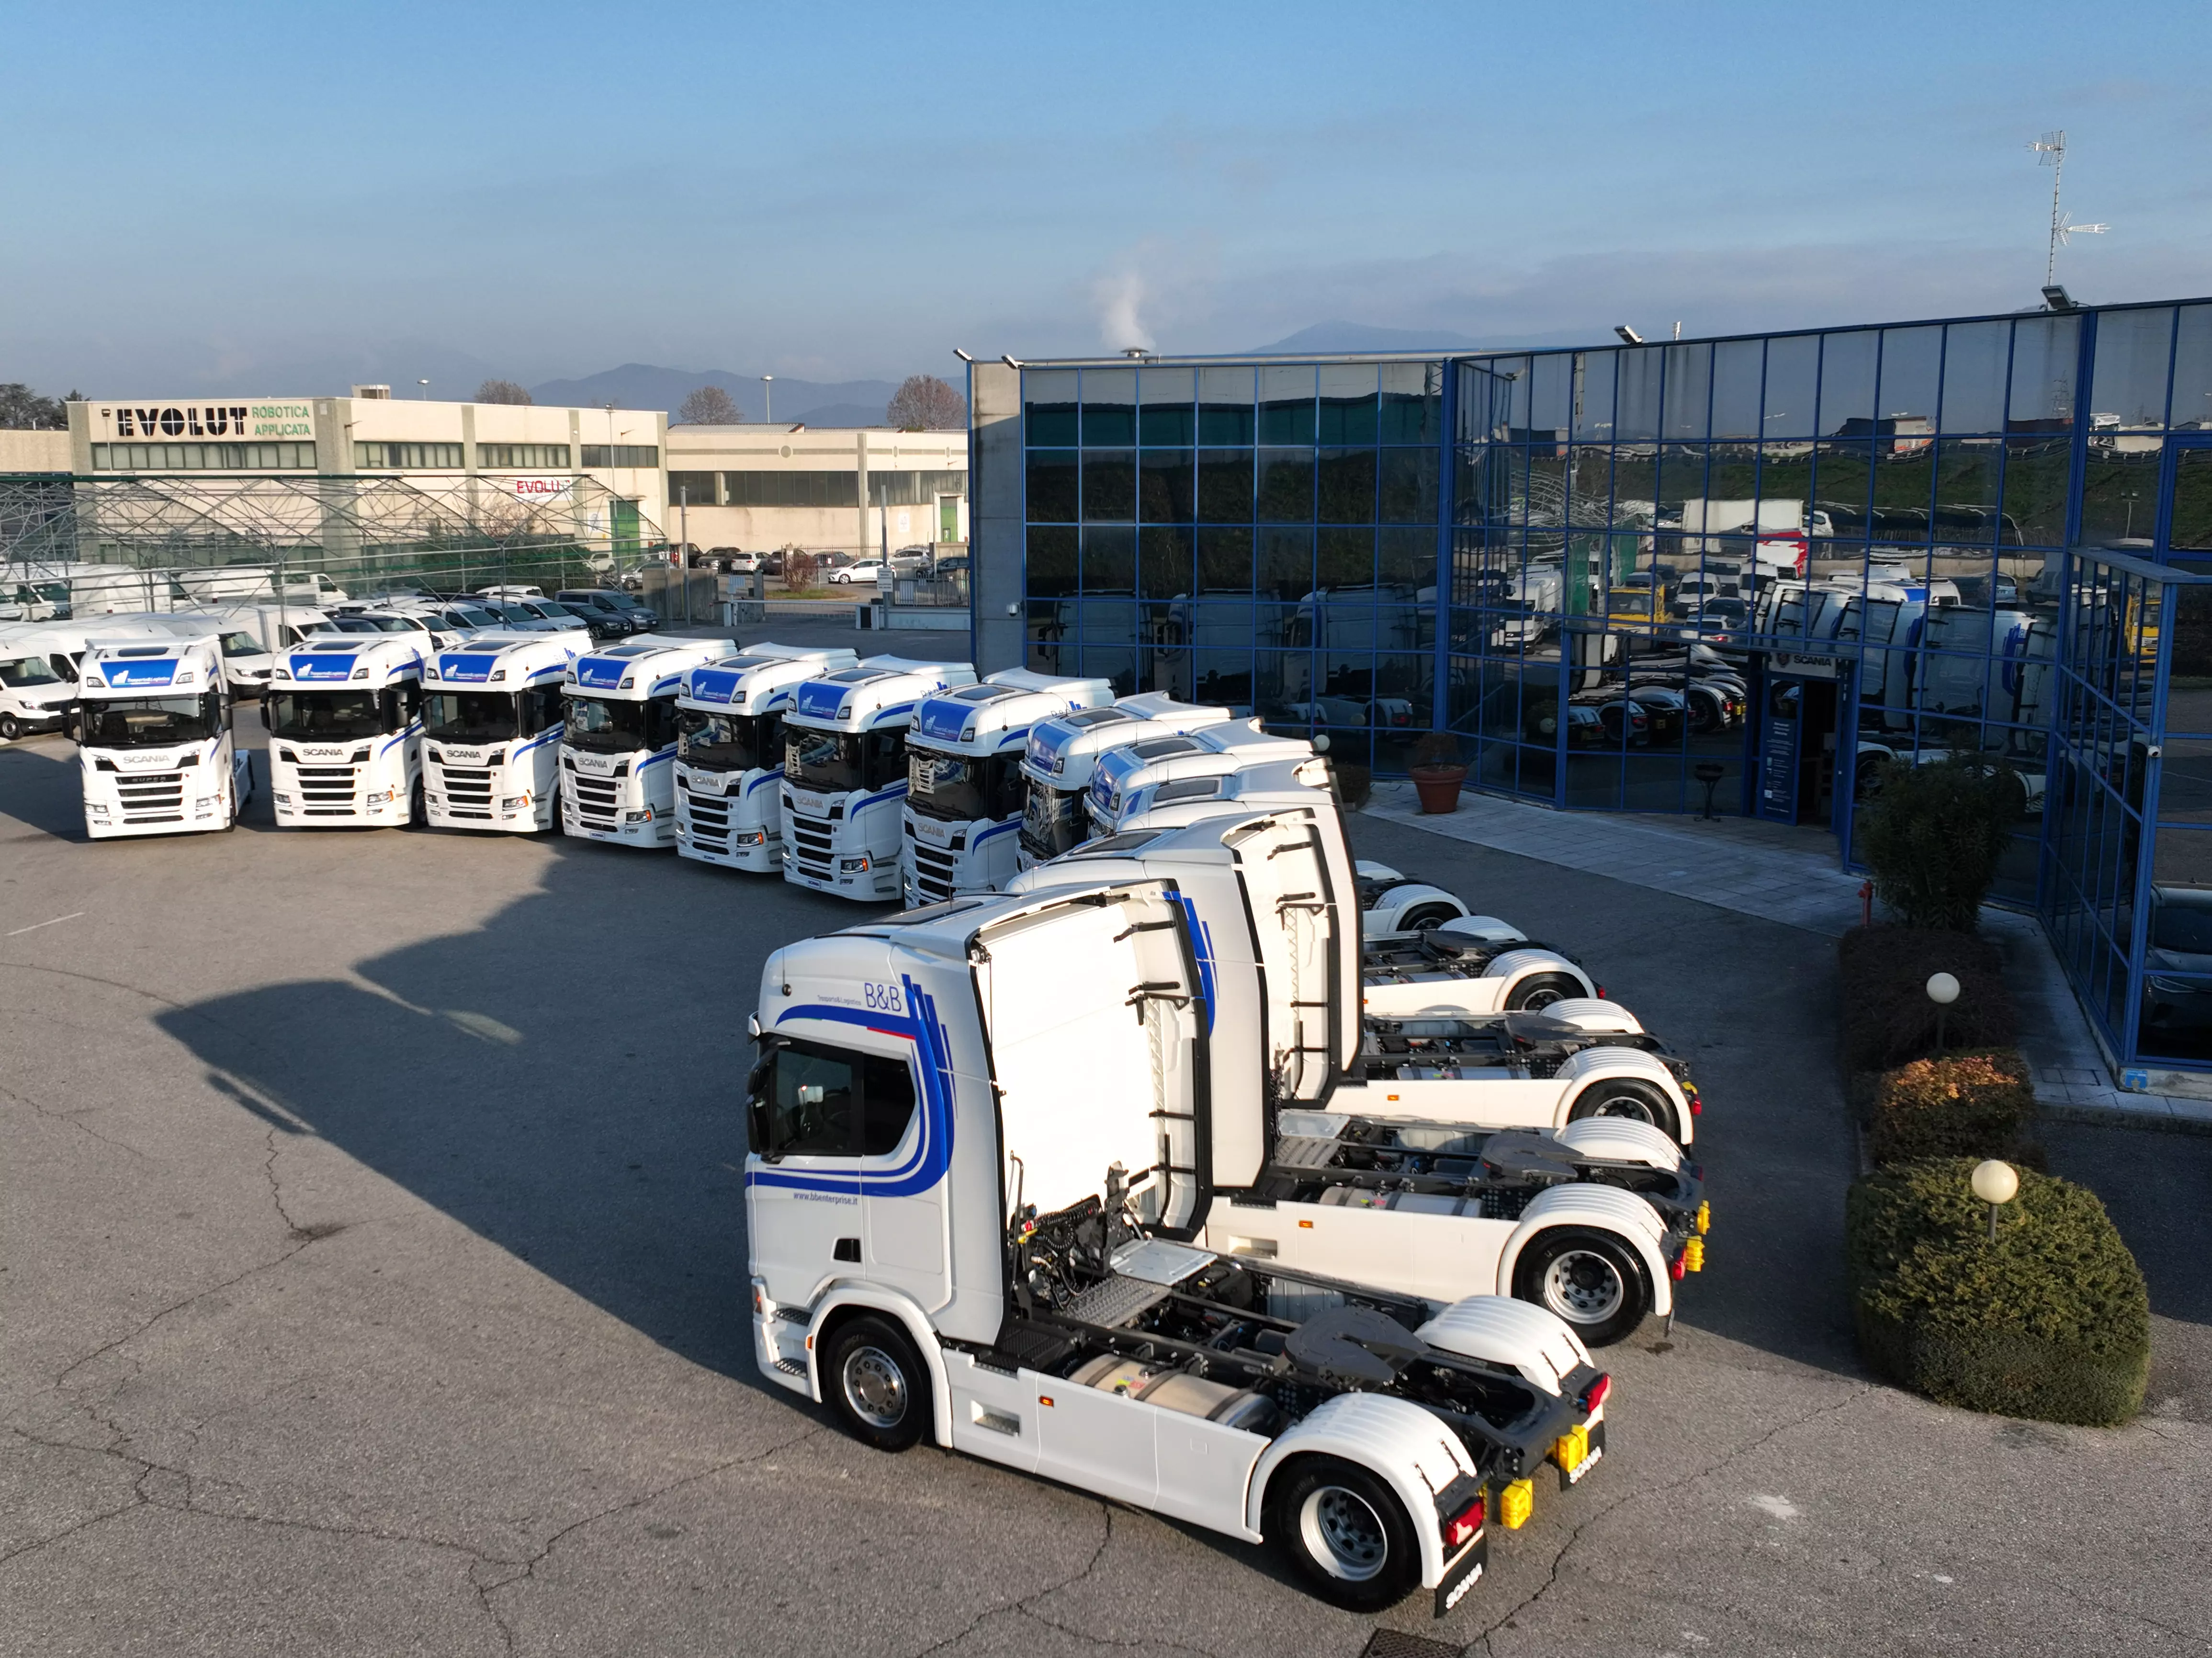 I 20 Scania Super consegnati a BeB enterprise fronte sede Rangoni e Affini Castegnato Brescia